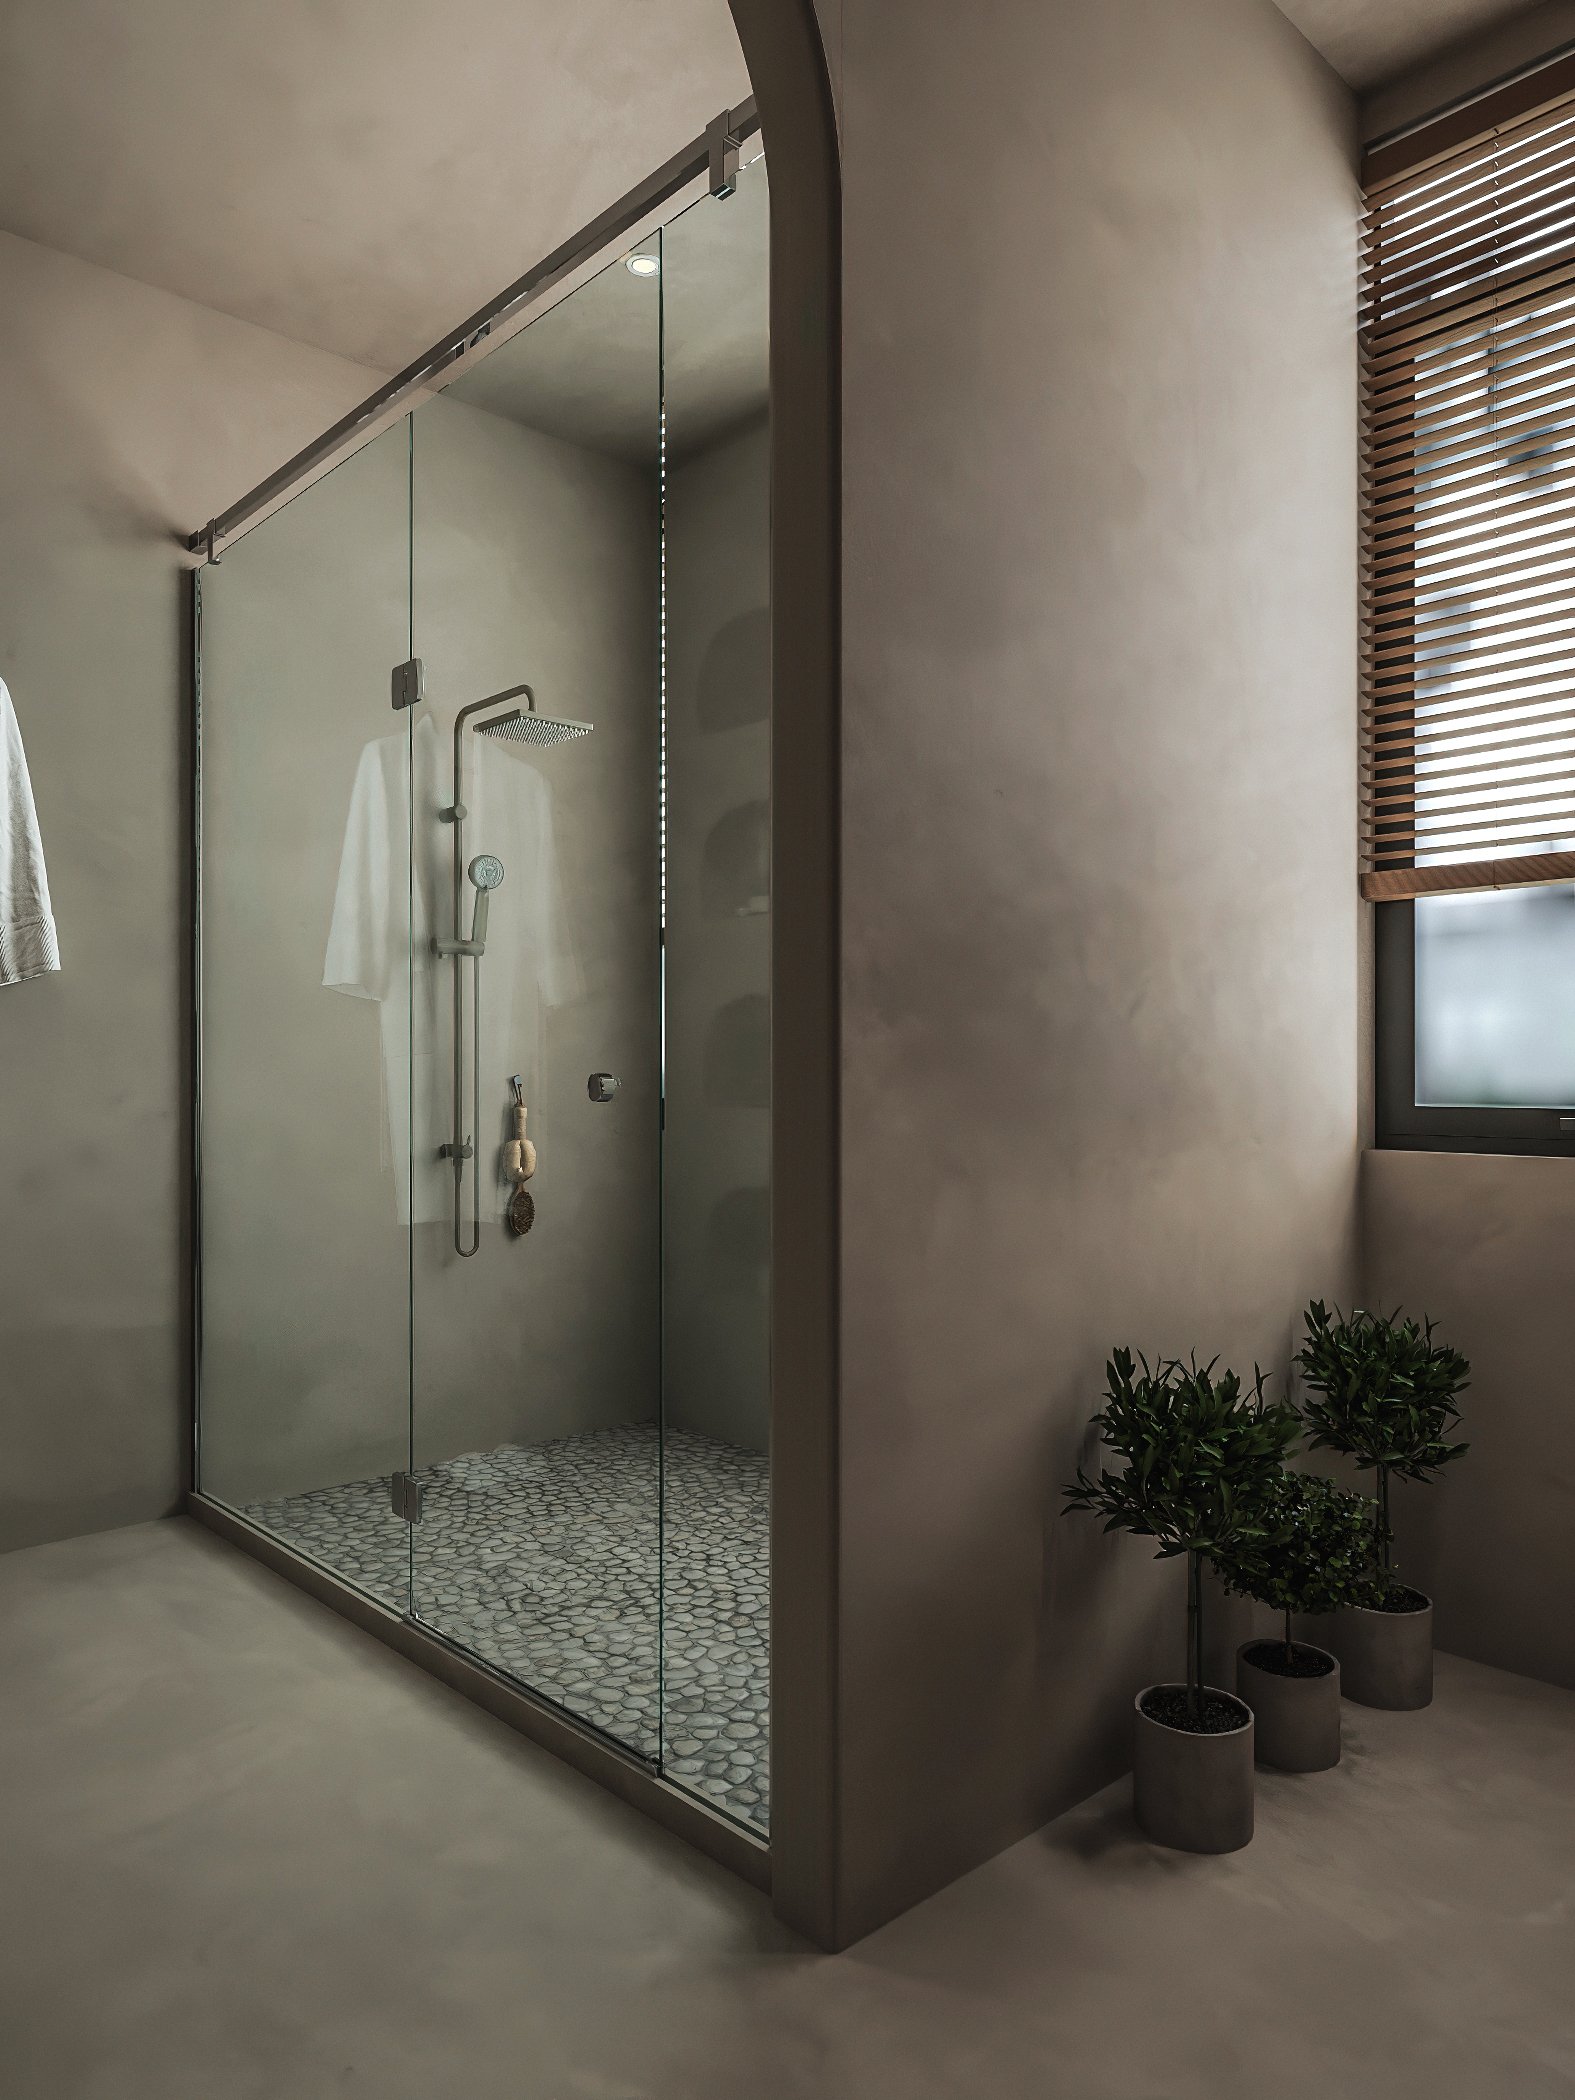 Phòng tắm vòi sen phân tách với khu vực bên ngoài bởi tường kính trong suốt.